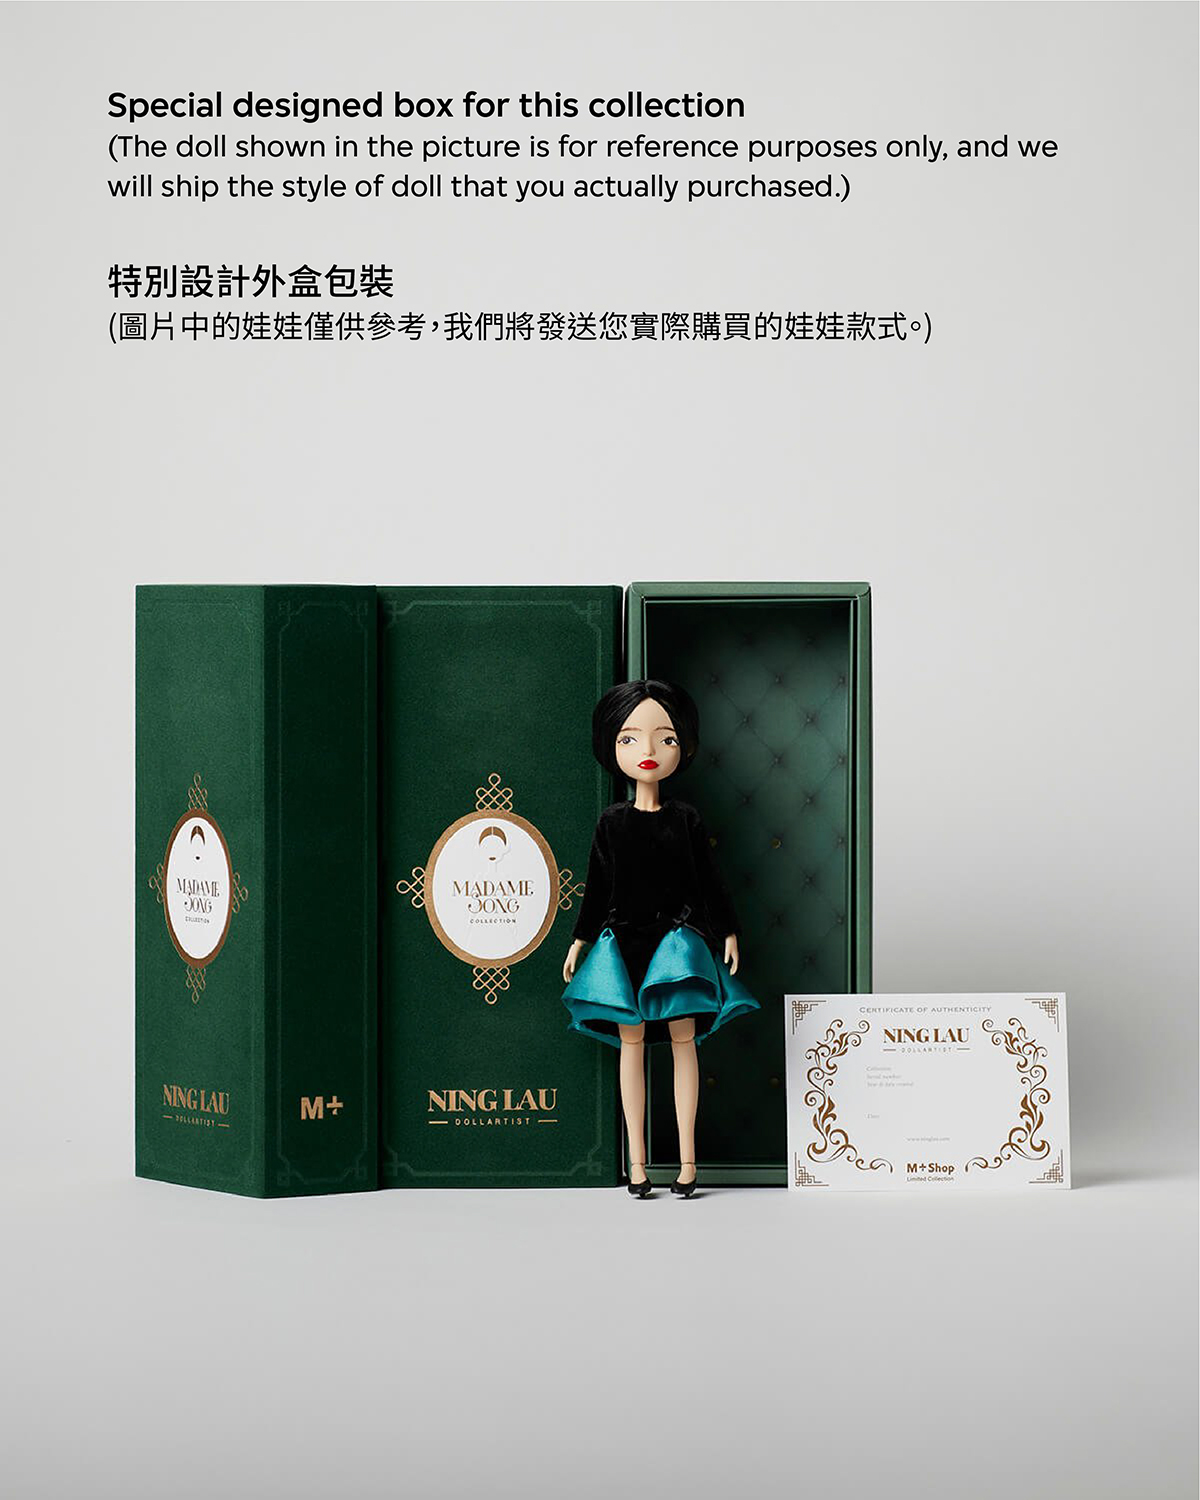 Ning Lau Handmade Doll - Deep V Back Velvet Dress